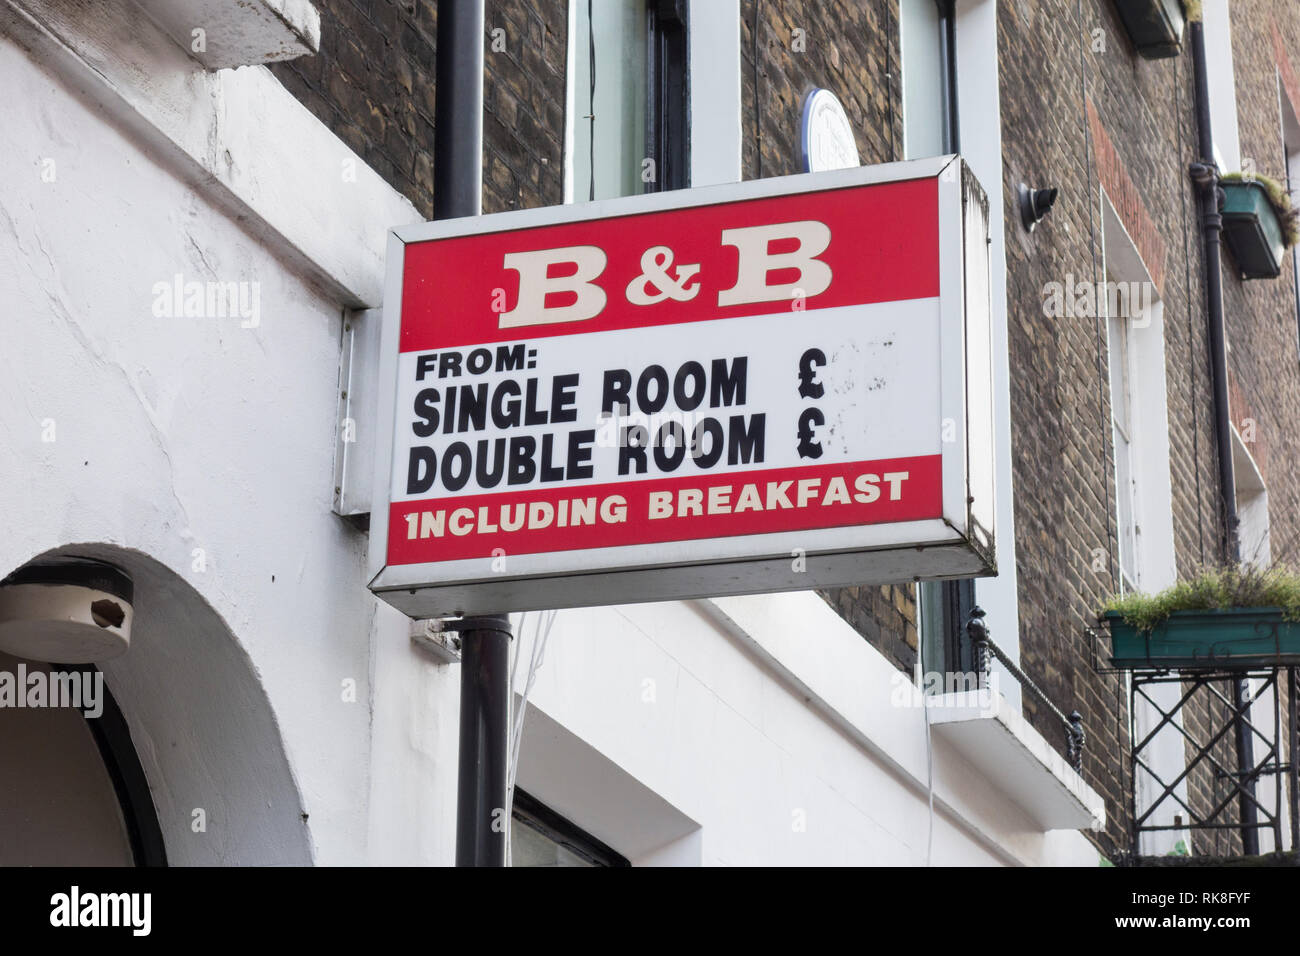 B&B accommodation, simples et doubles, avec petit déjeuner sign Banque D'Images